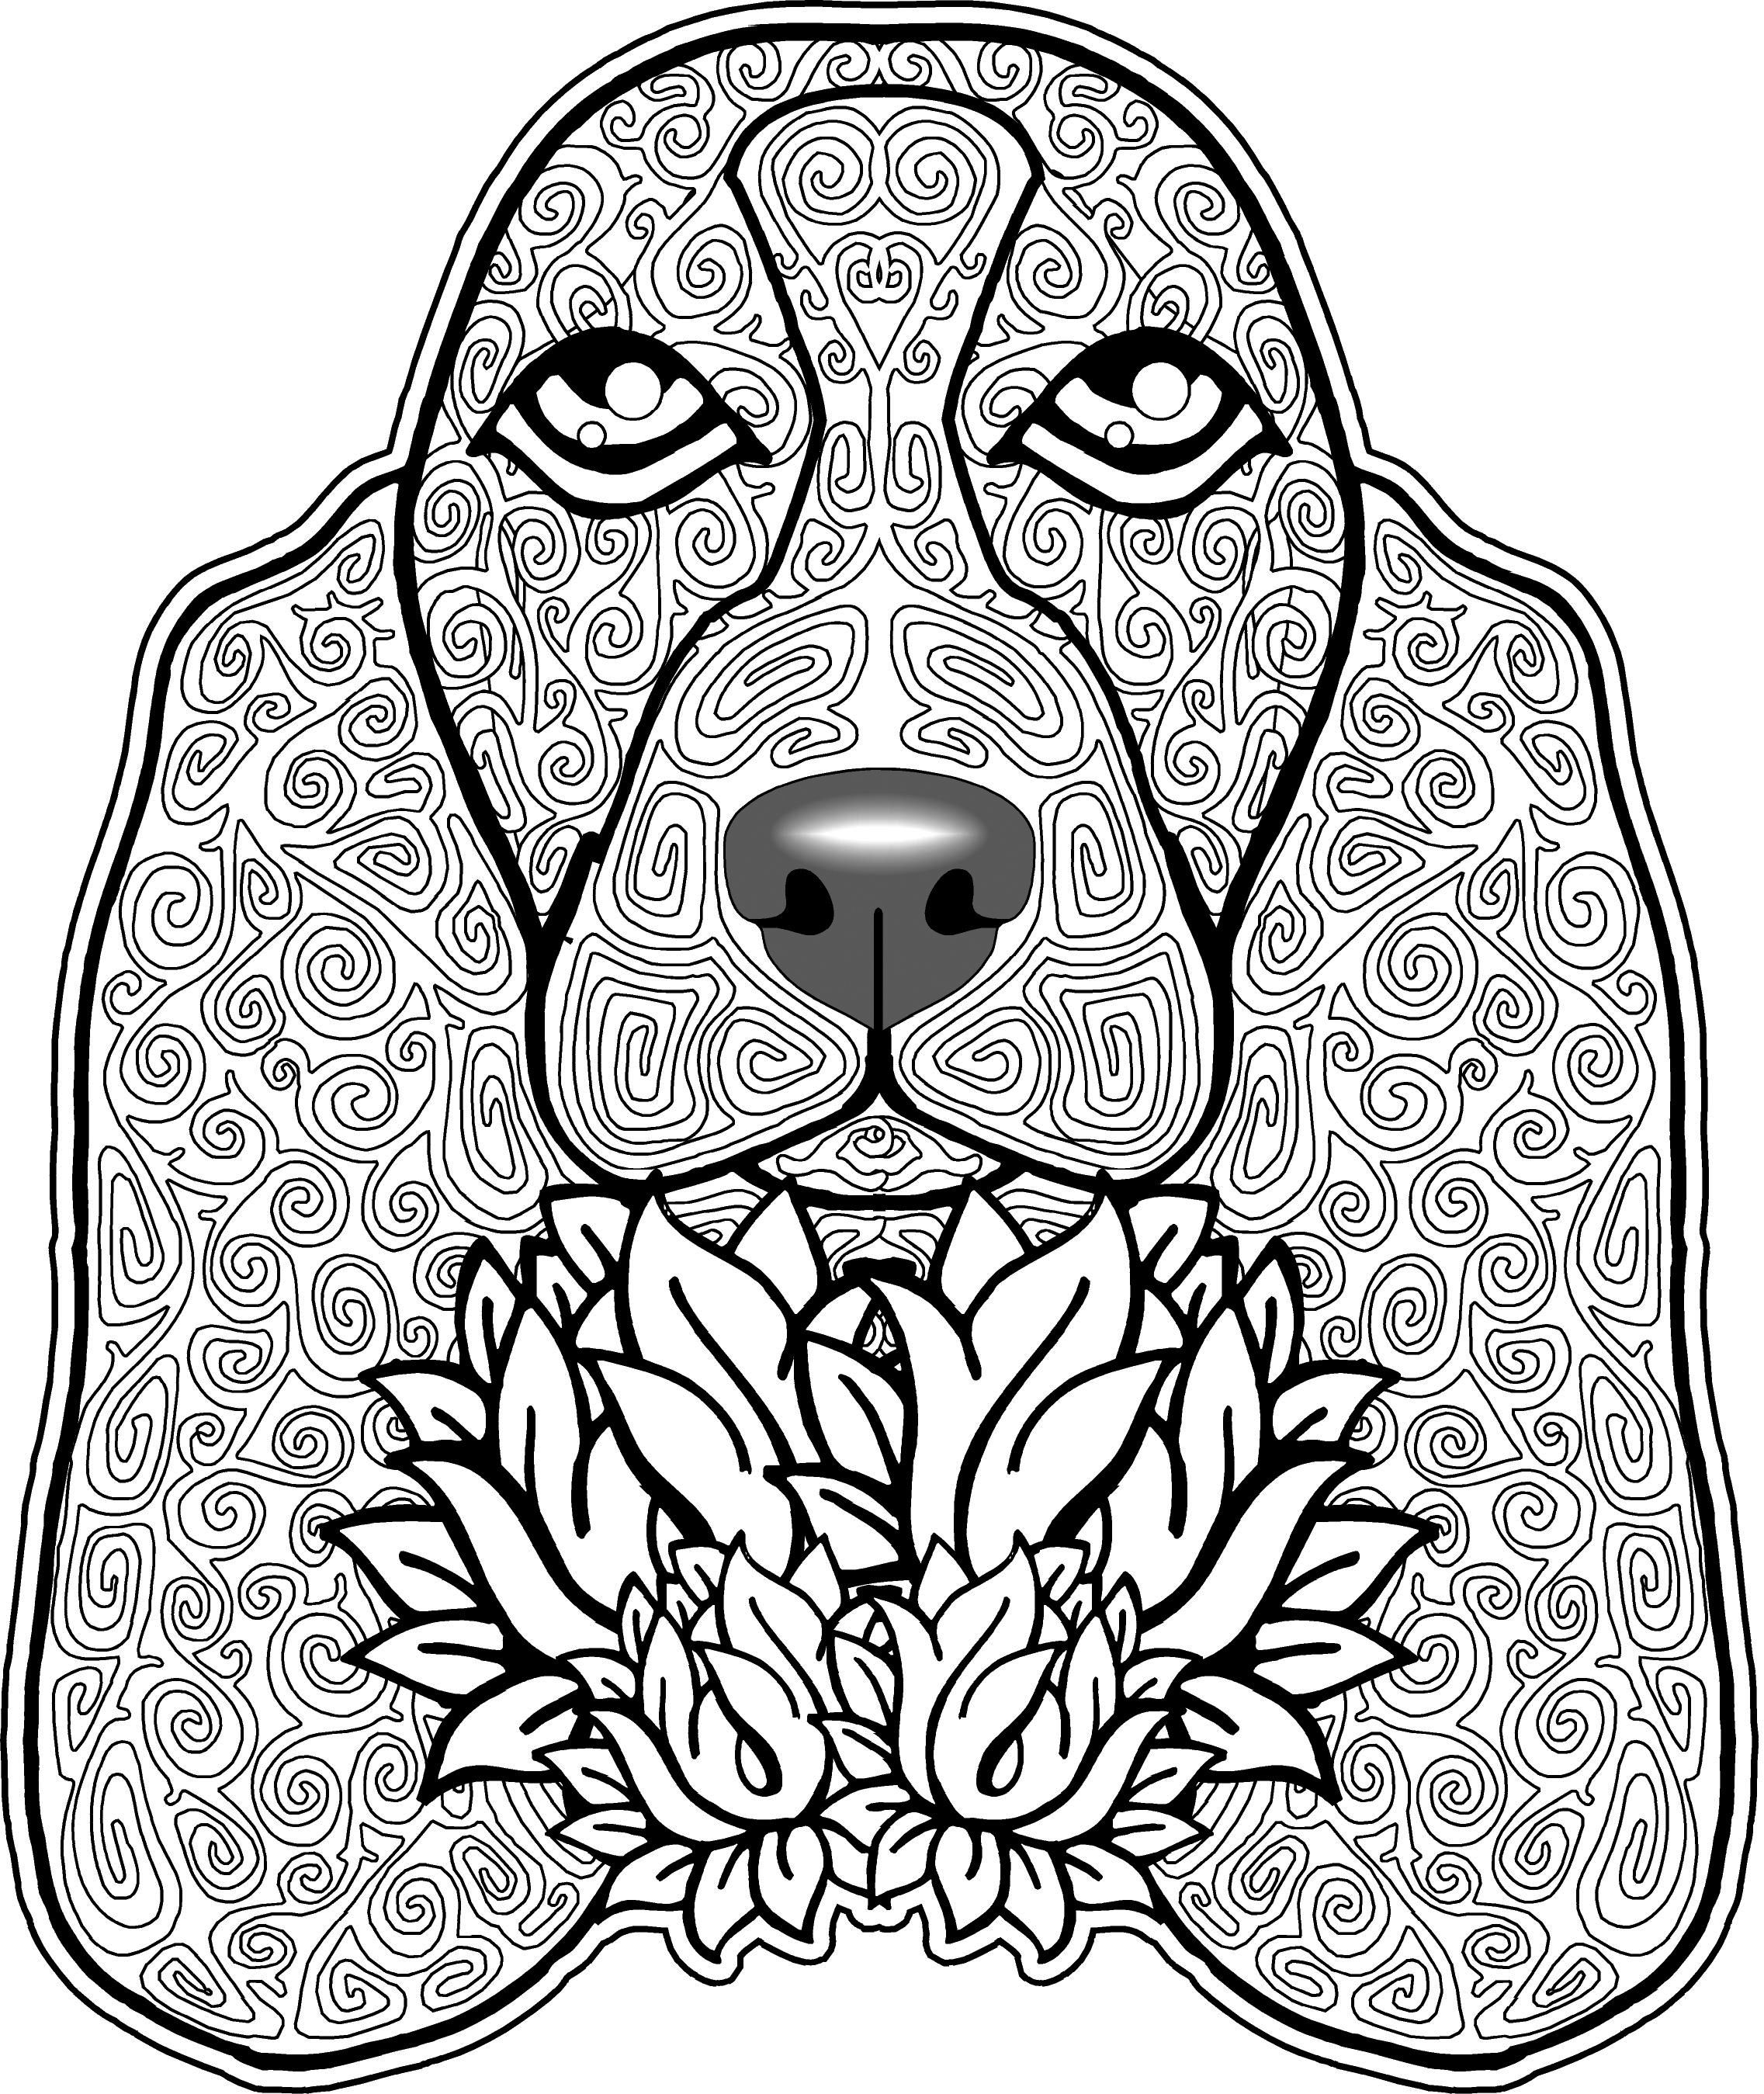 Dog Mandala Coloring Pages at Free printable